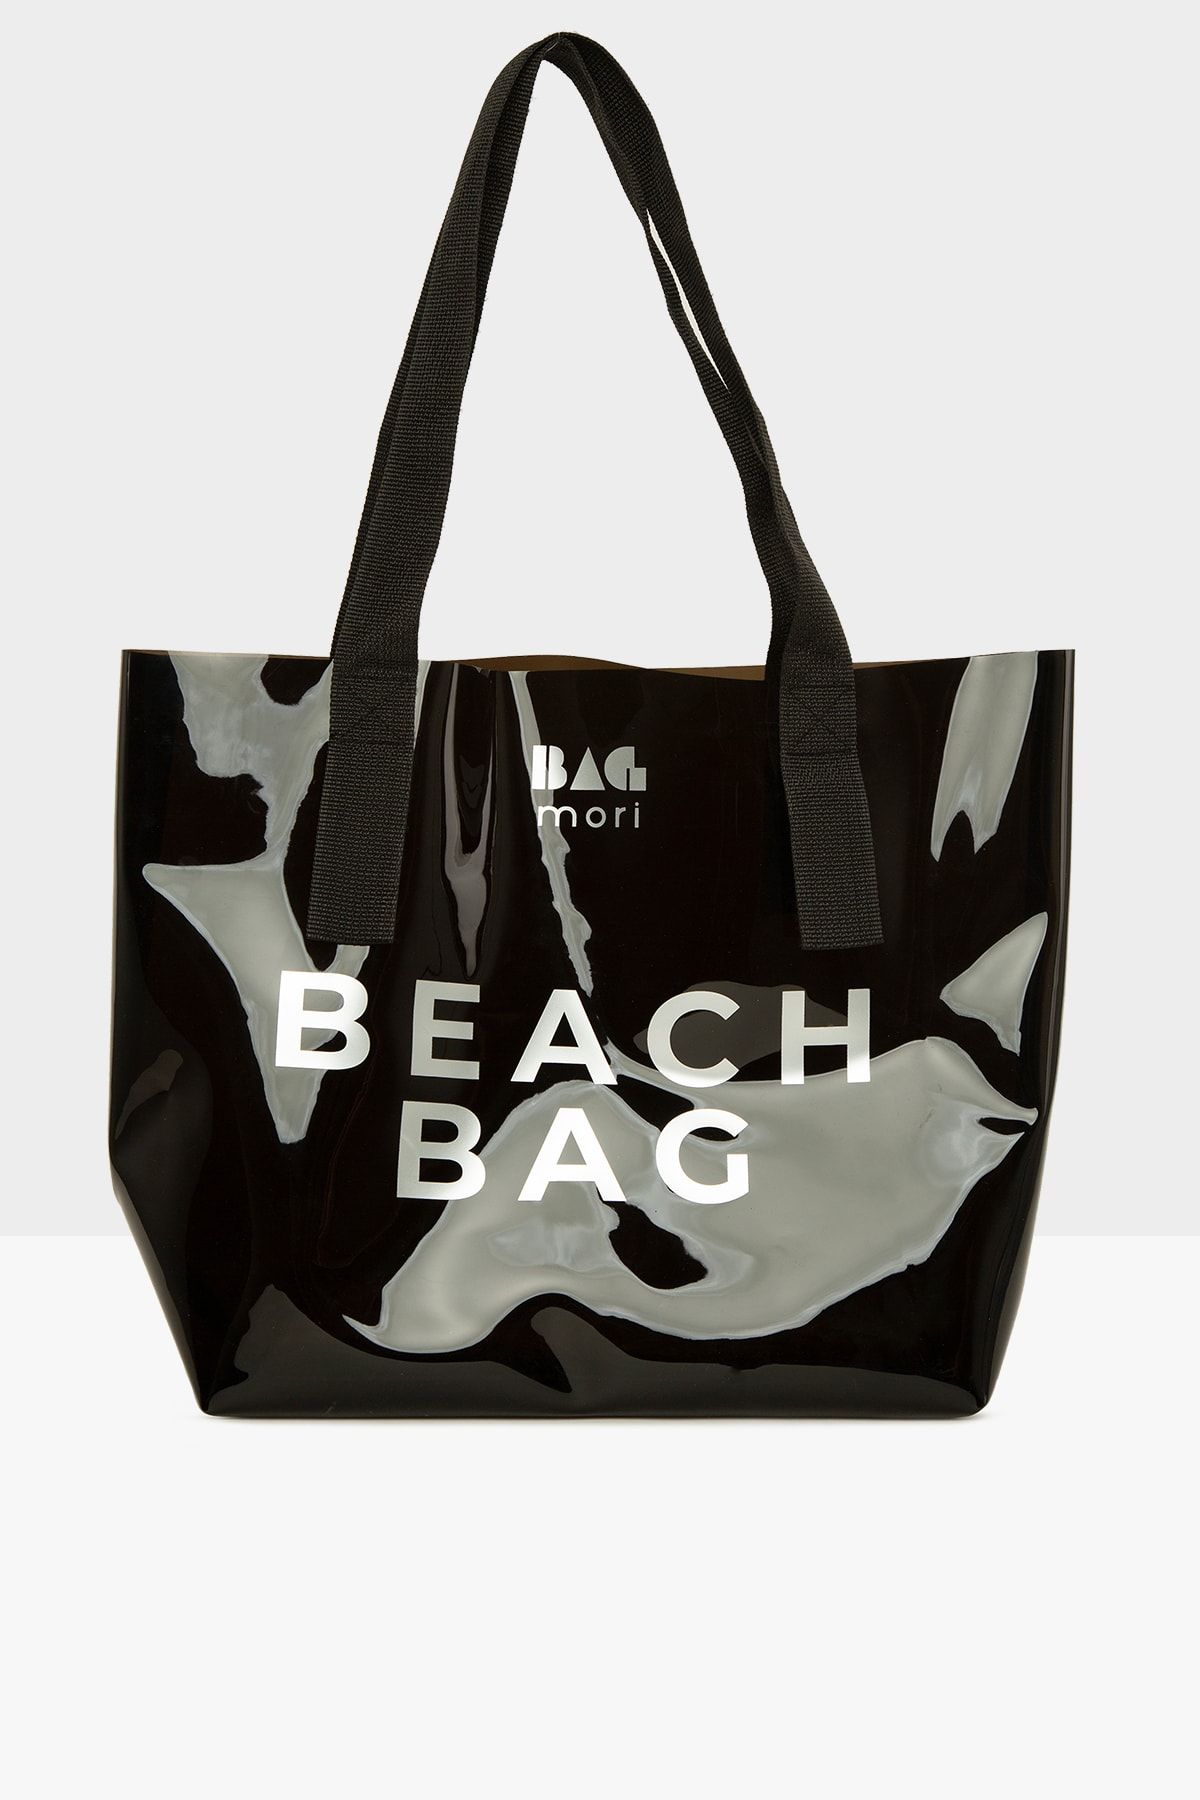 Bagmori Siyah Kadın Beach Bag Baskılı Şeffaf Plaj Çantası M000007257